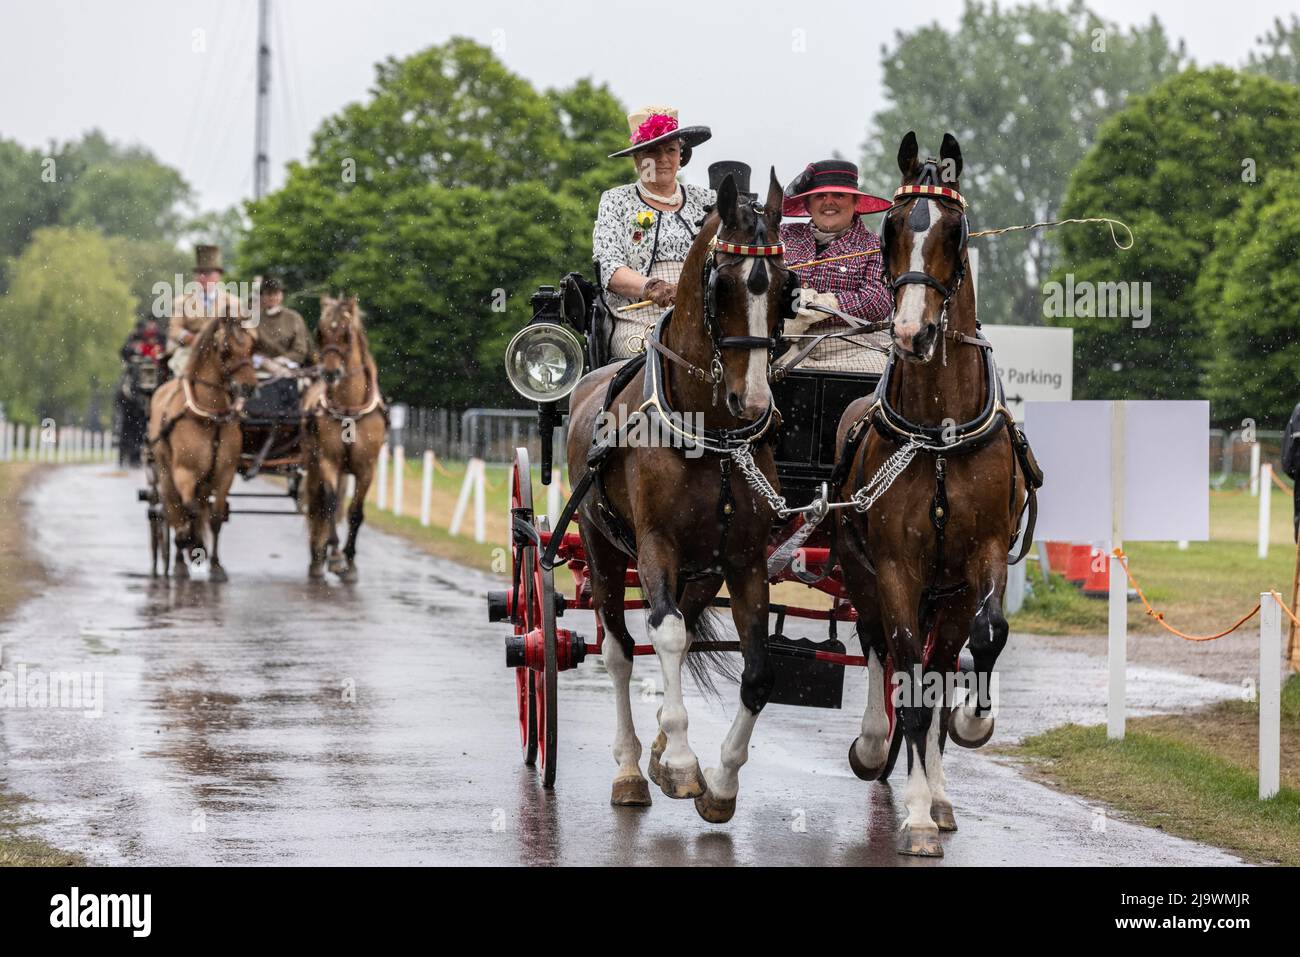 Royal Windsor Horse Show, le plus grand spectacle équestre en plein air du Royaume-Uni, Windsor Castle, Angleterre, Royaume-Uni Banque D'Images